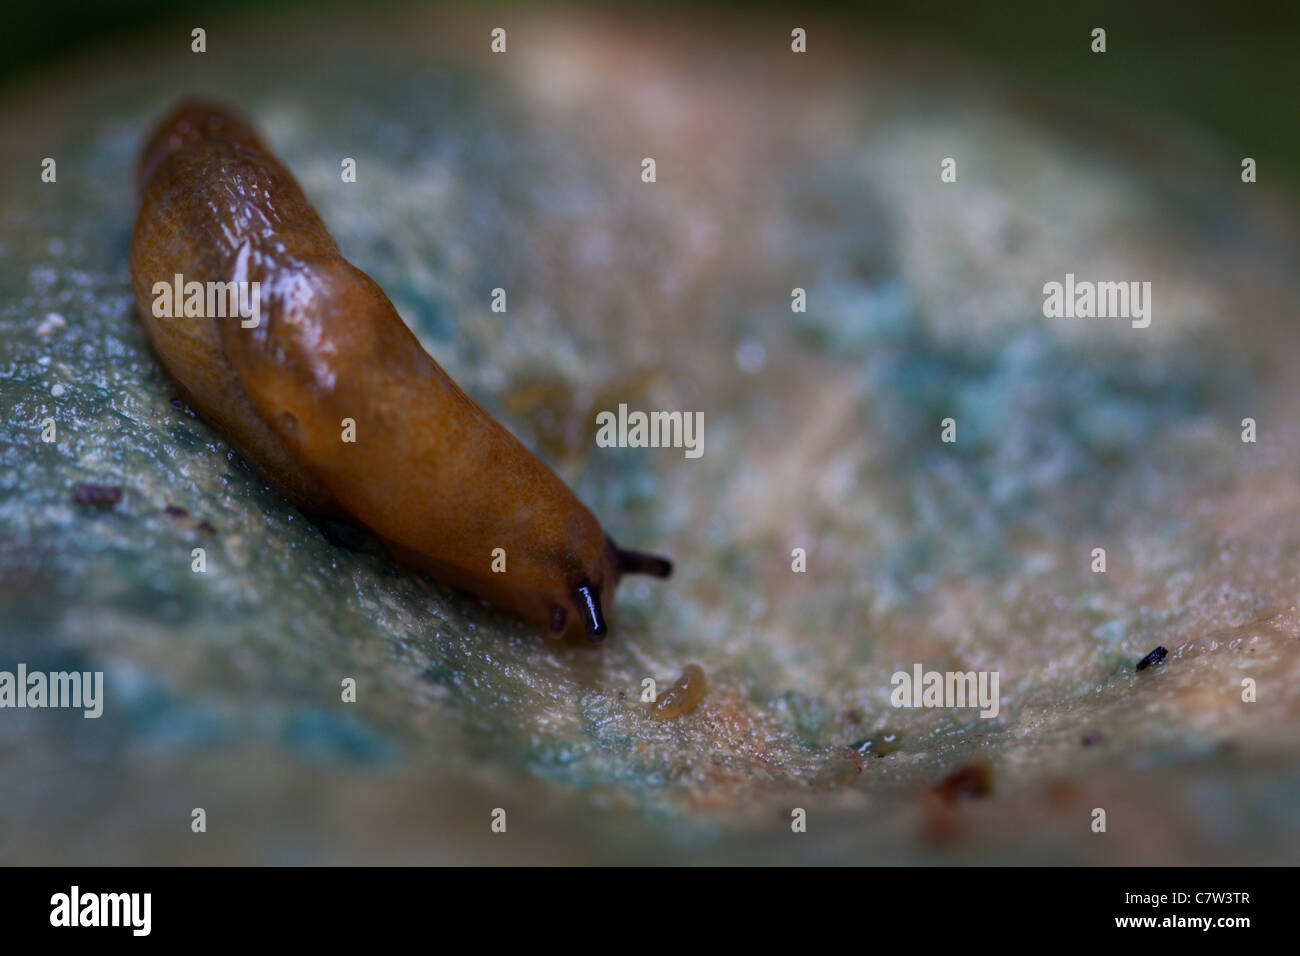 brown slug on a mushroom Stock Photo